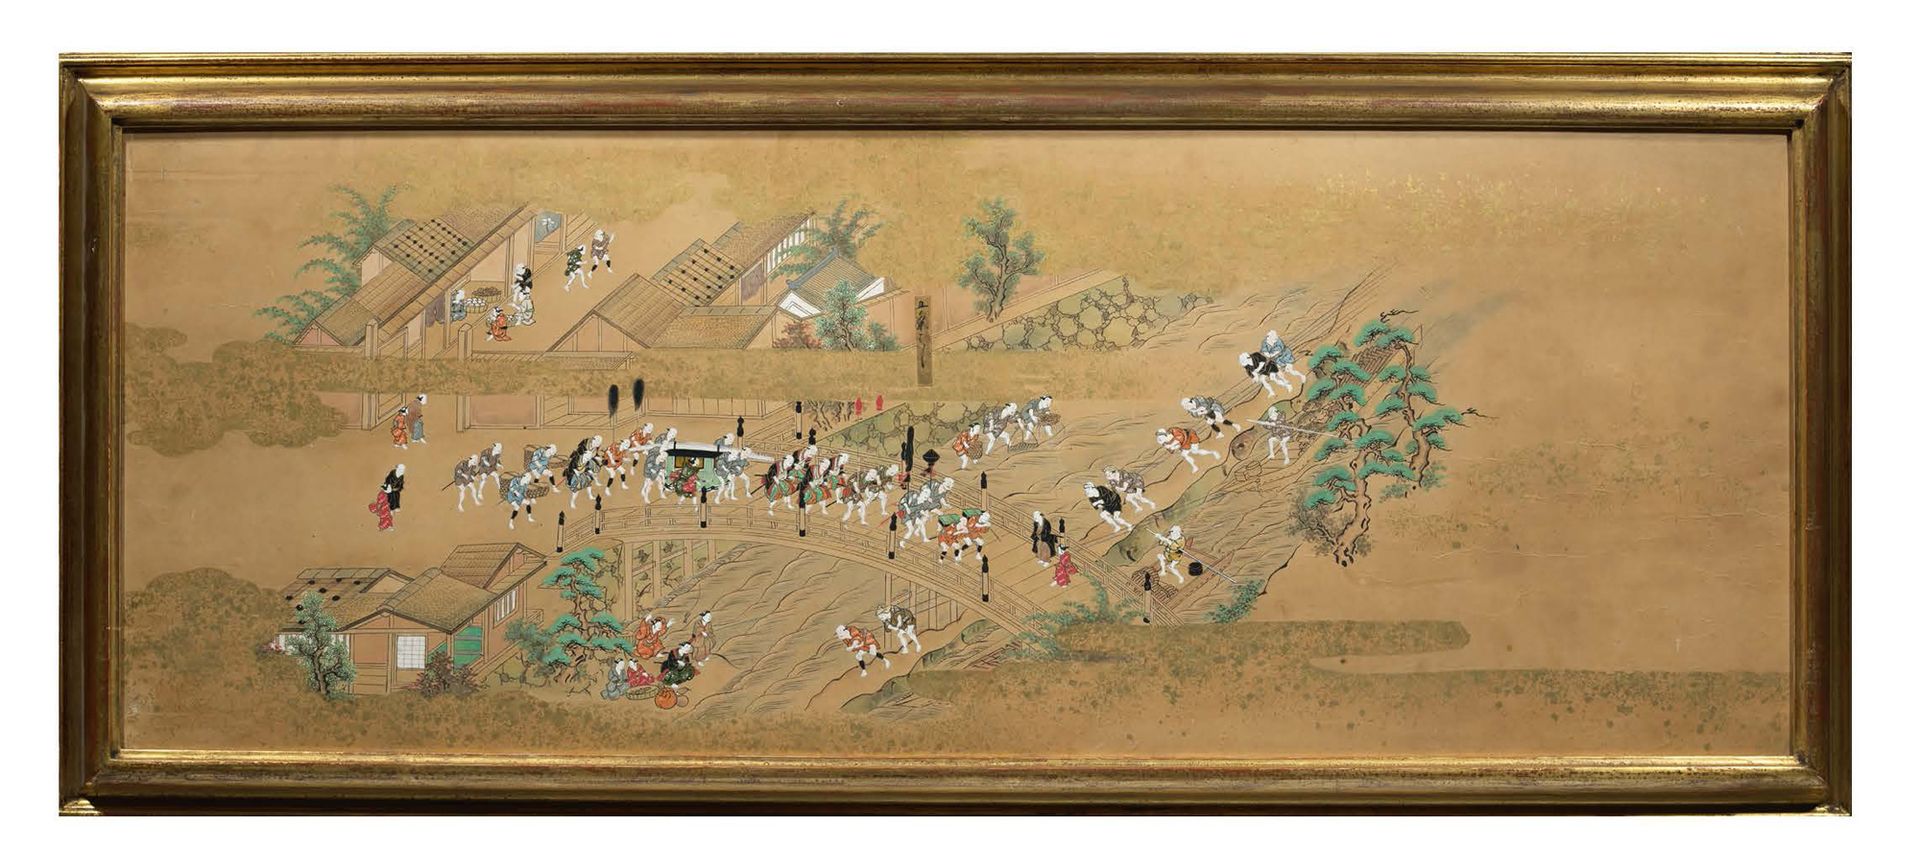 JAPON ÉCOLE DE TOSA, FIN DE LA PÉRIODE EDO (1603-1867) 纸上水墨和彩色画，描绘了一个政要的队伍离开一个河流&hellip;